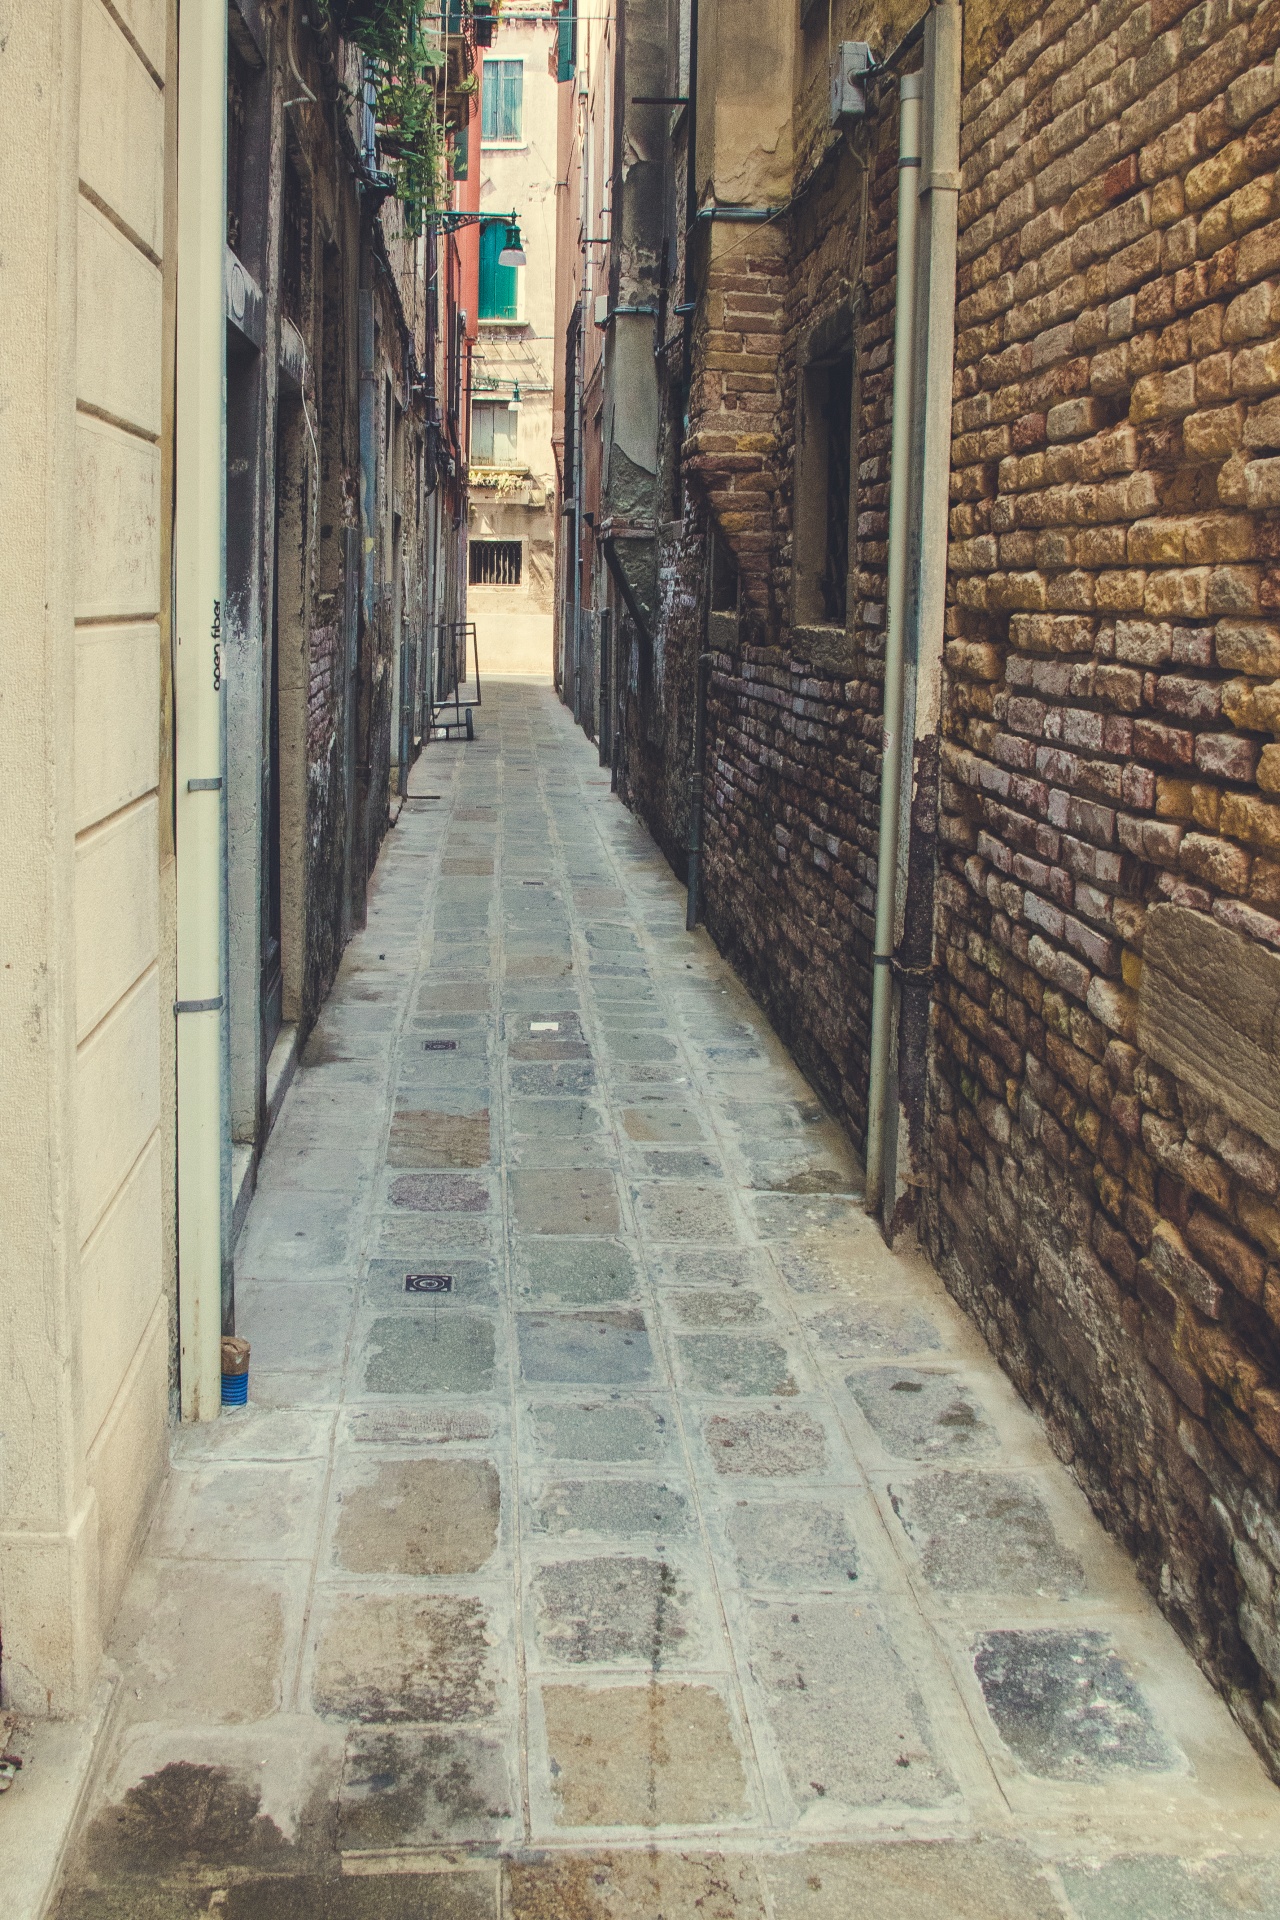 Úzká ulice v Benátkách